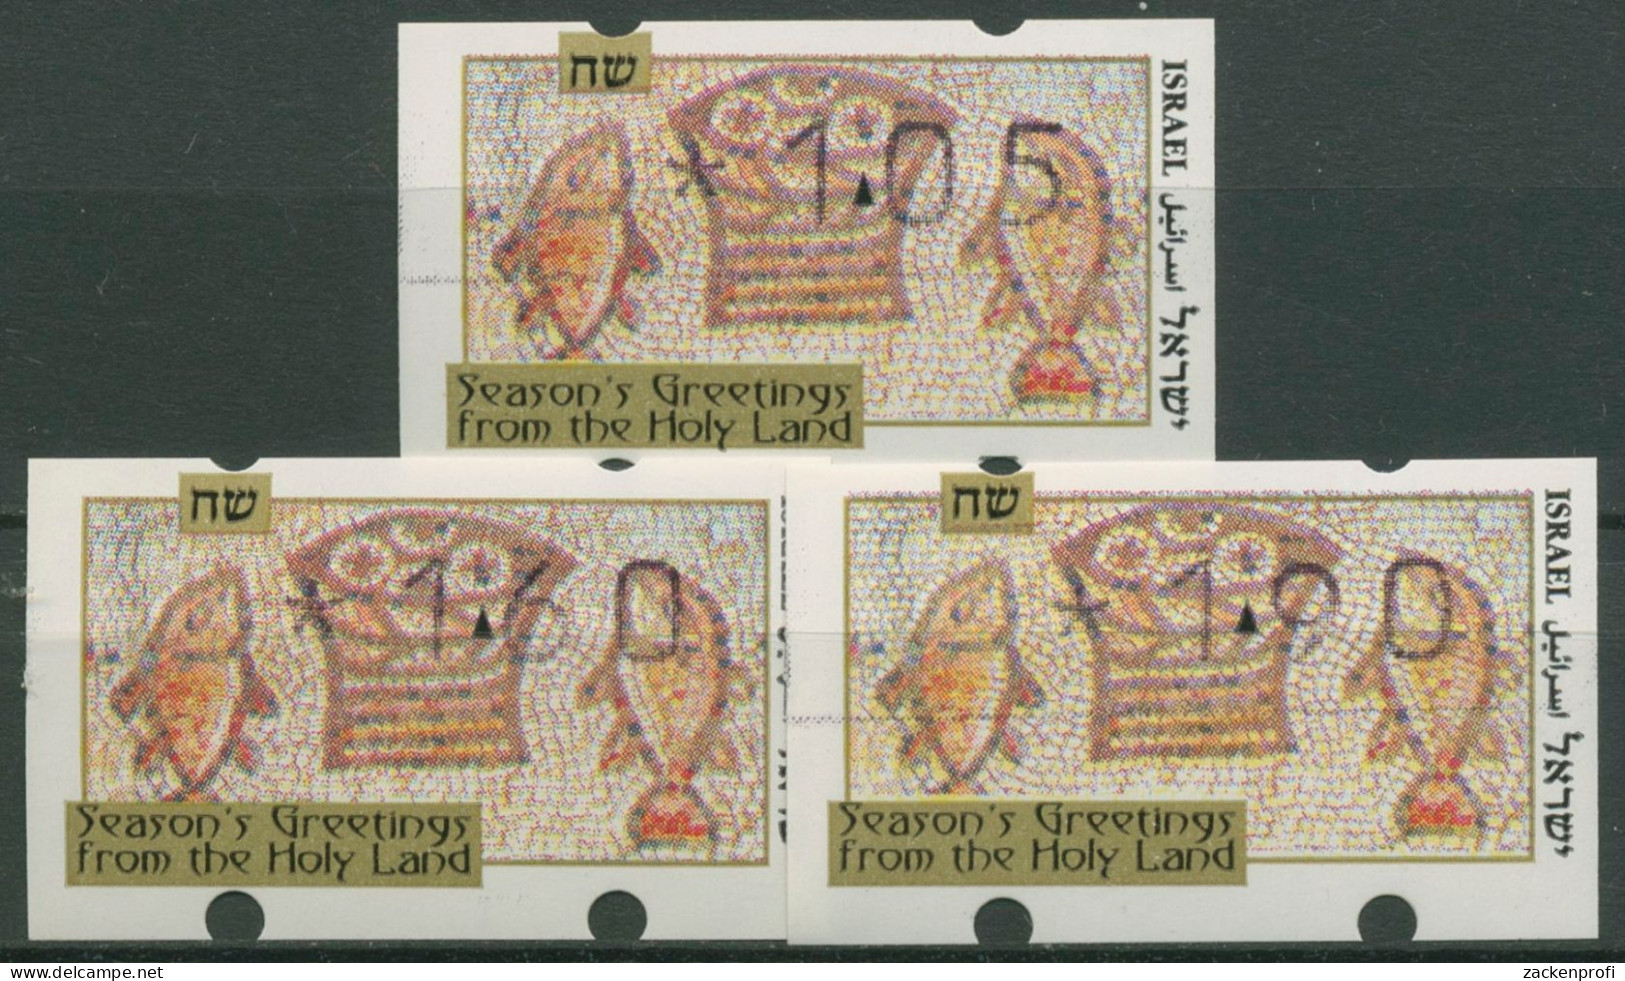 Israel 1996 Automatenmarken Weihnachten Satz 3 Werte ATM 29 S1 Postfrisch - Vignettes D'affranchissement (Frama)